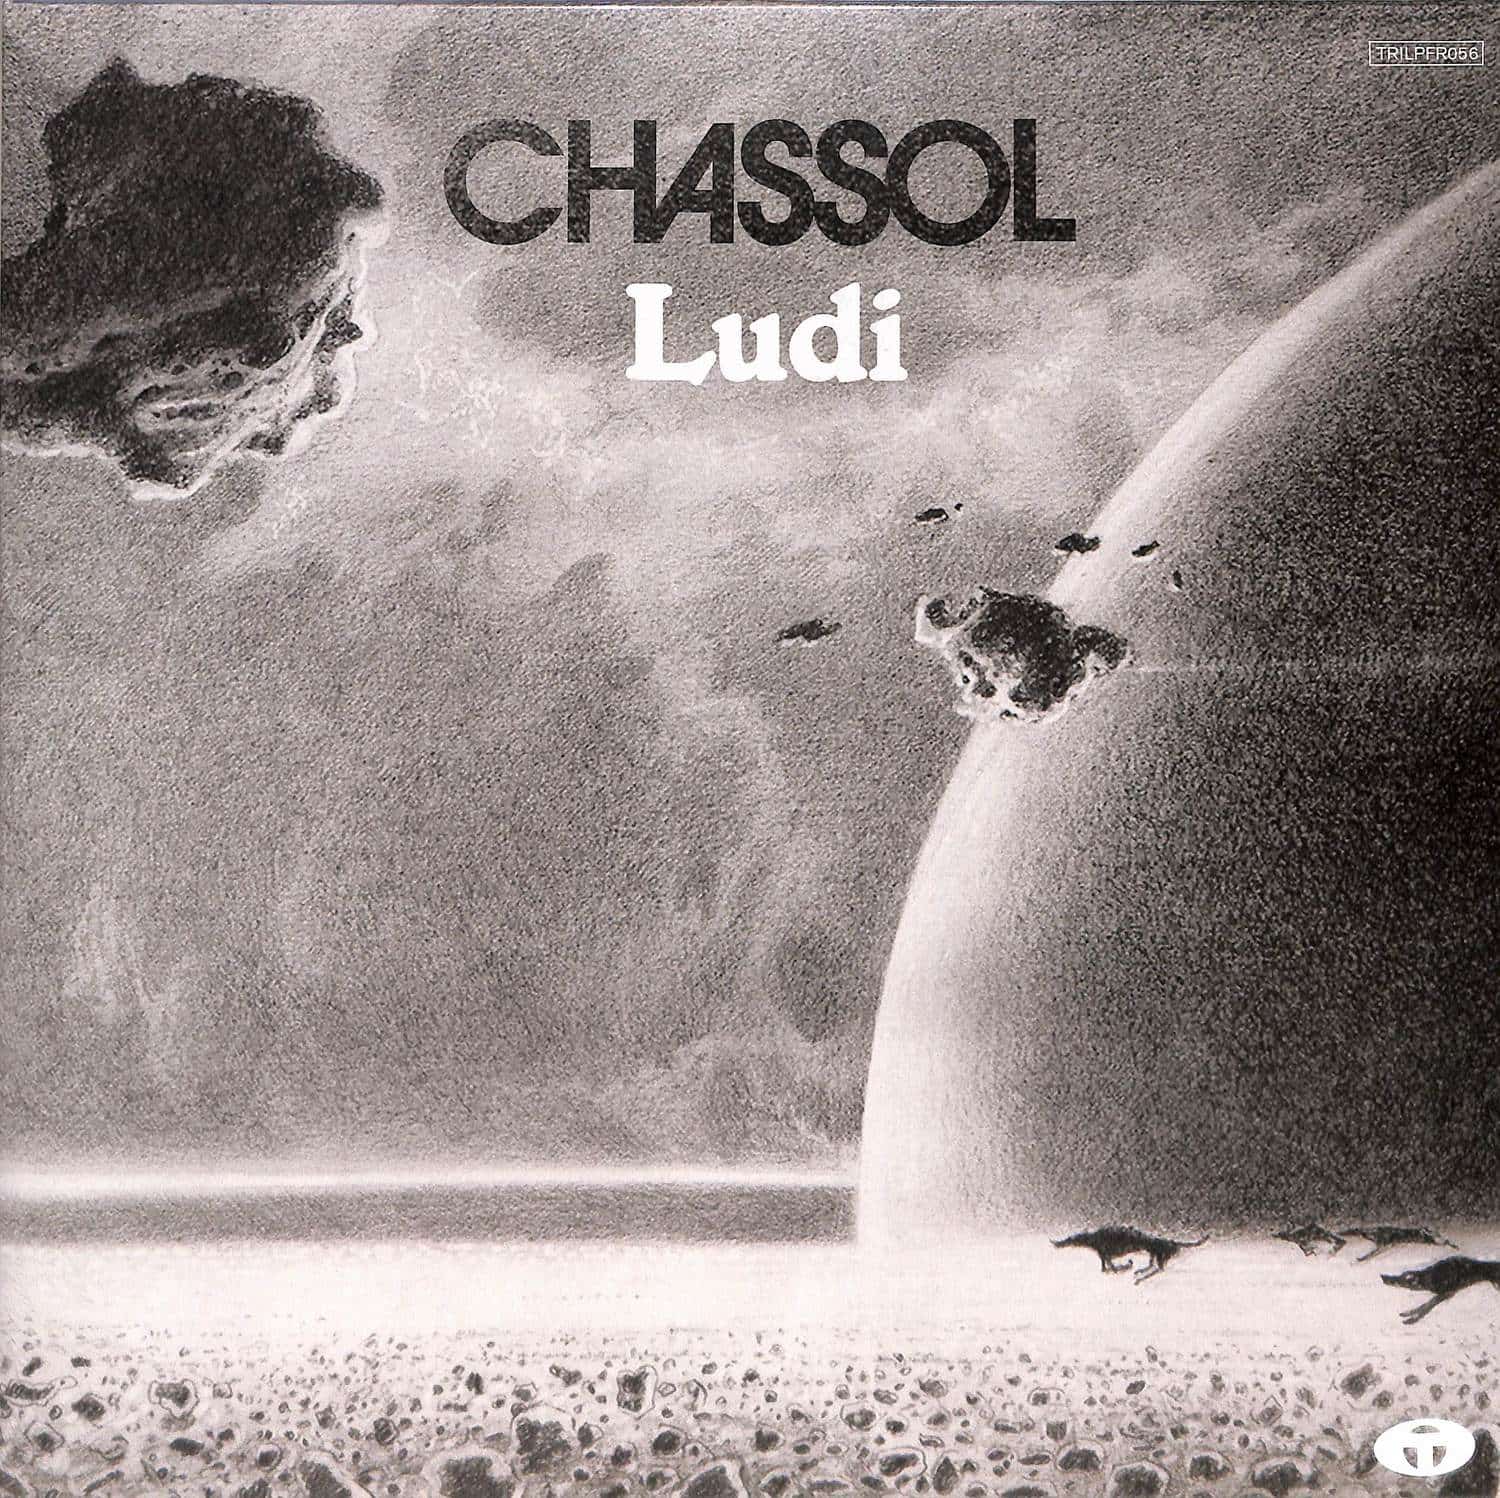 Chassol - LUDI 